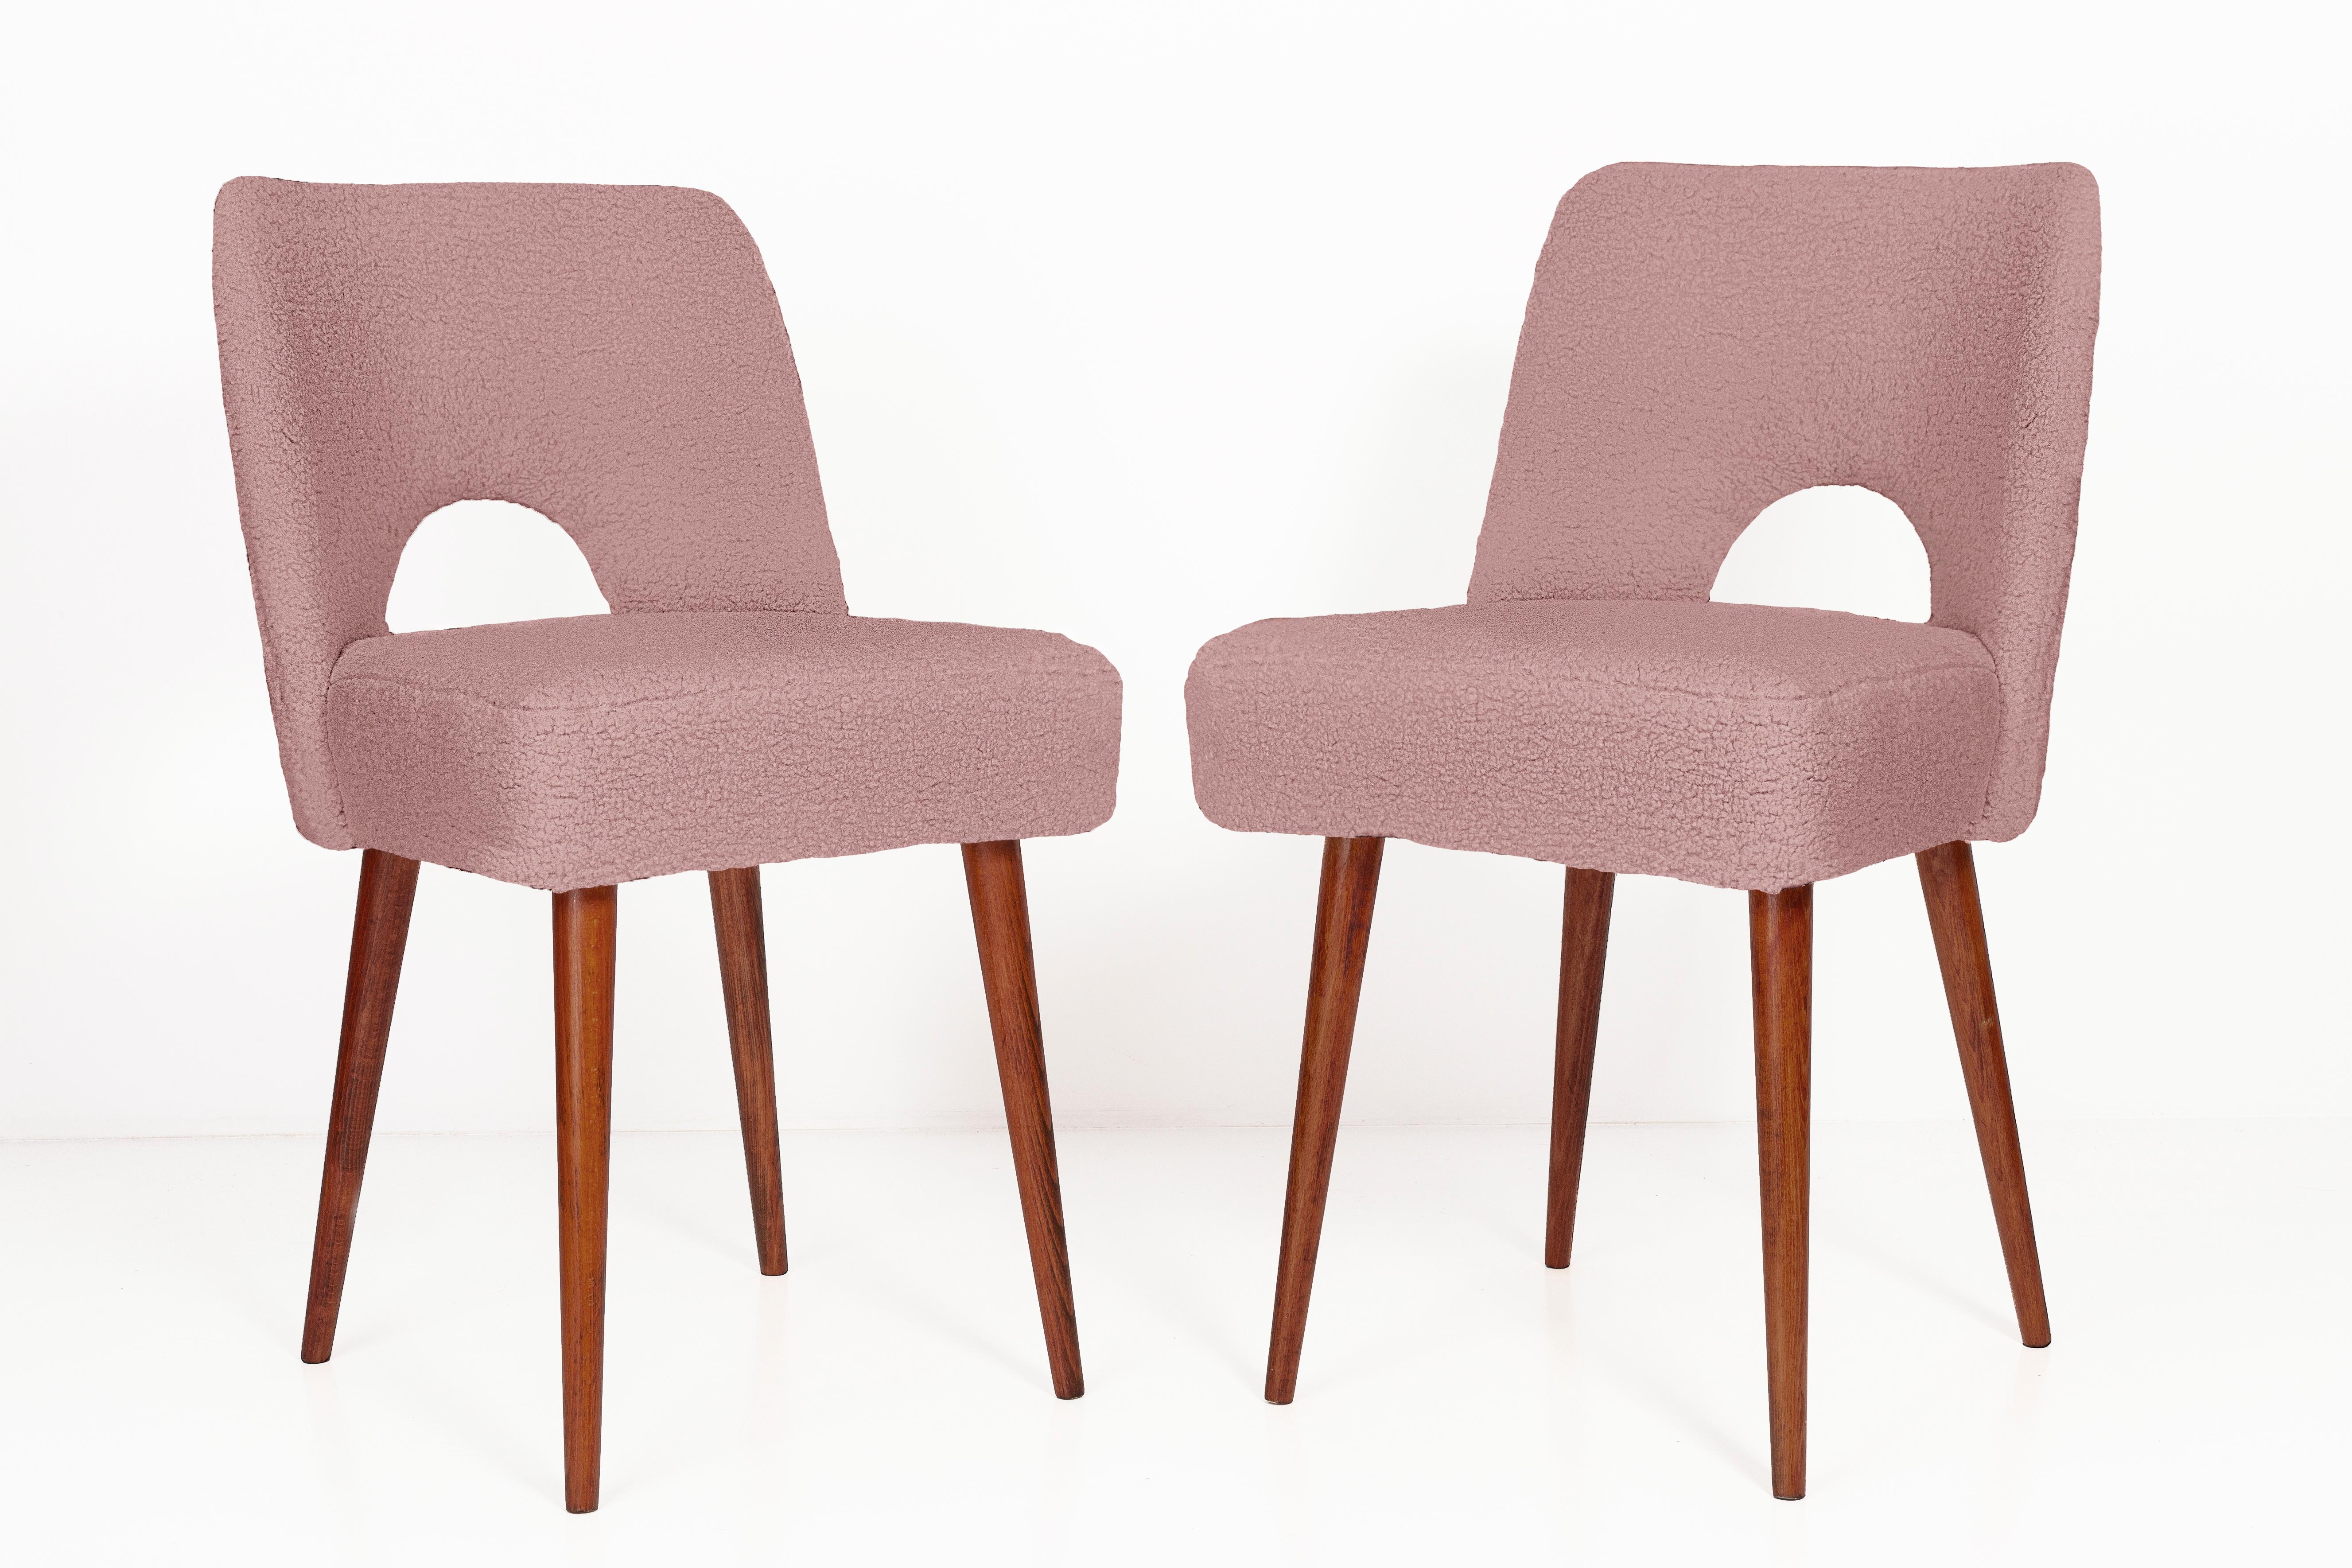 Deux belles chaises de type 1020 appelées familièrement 